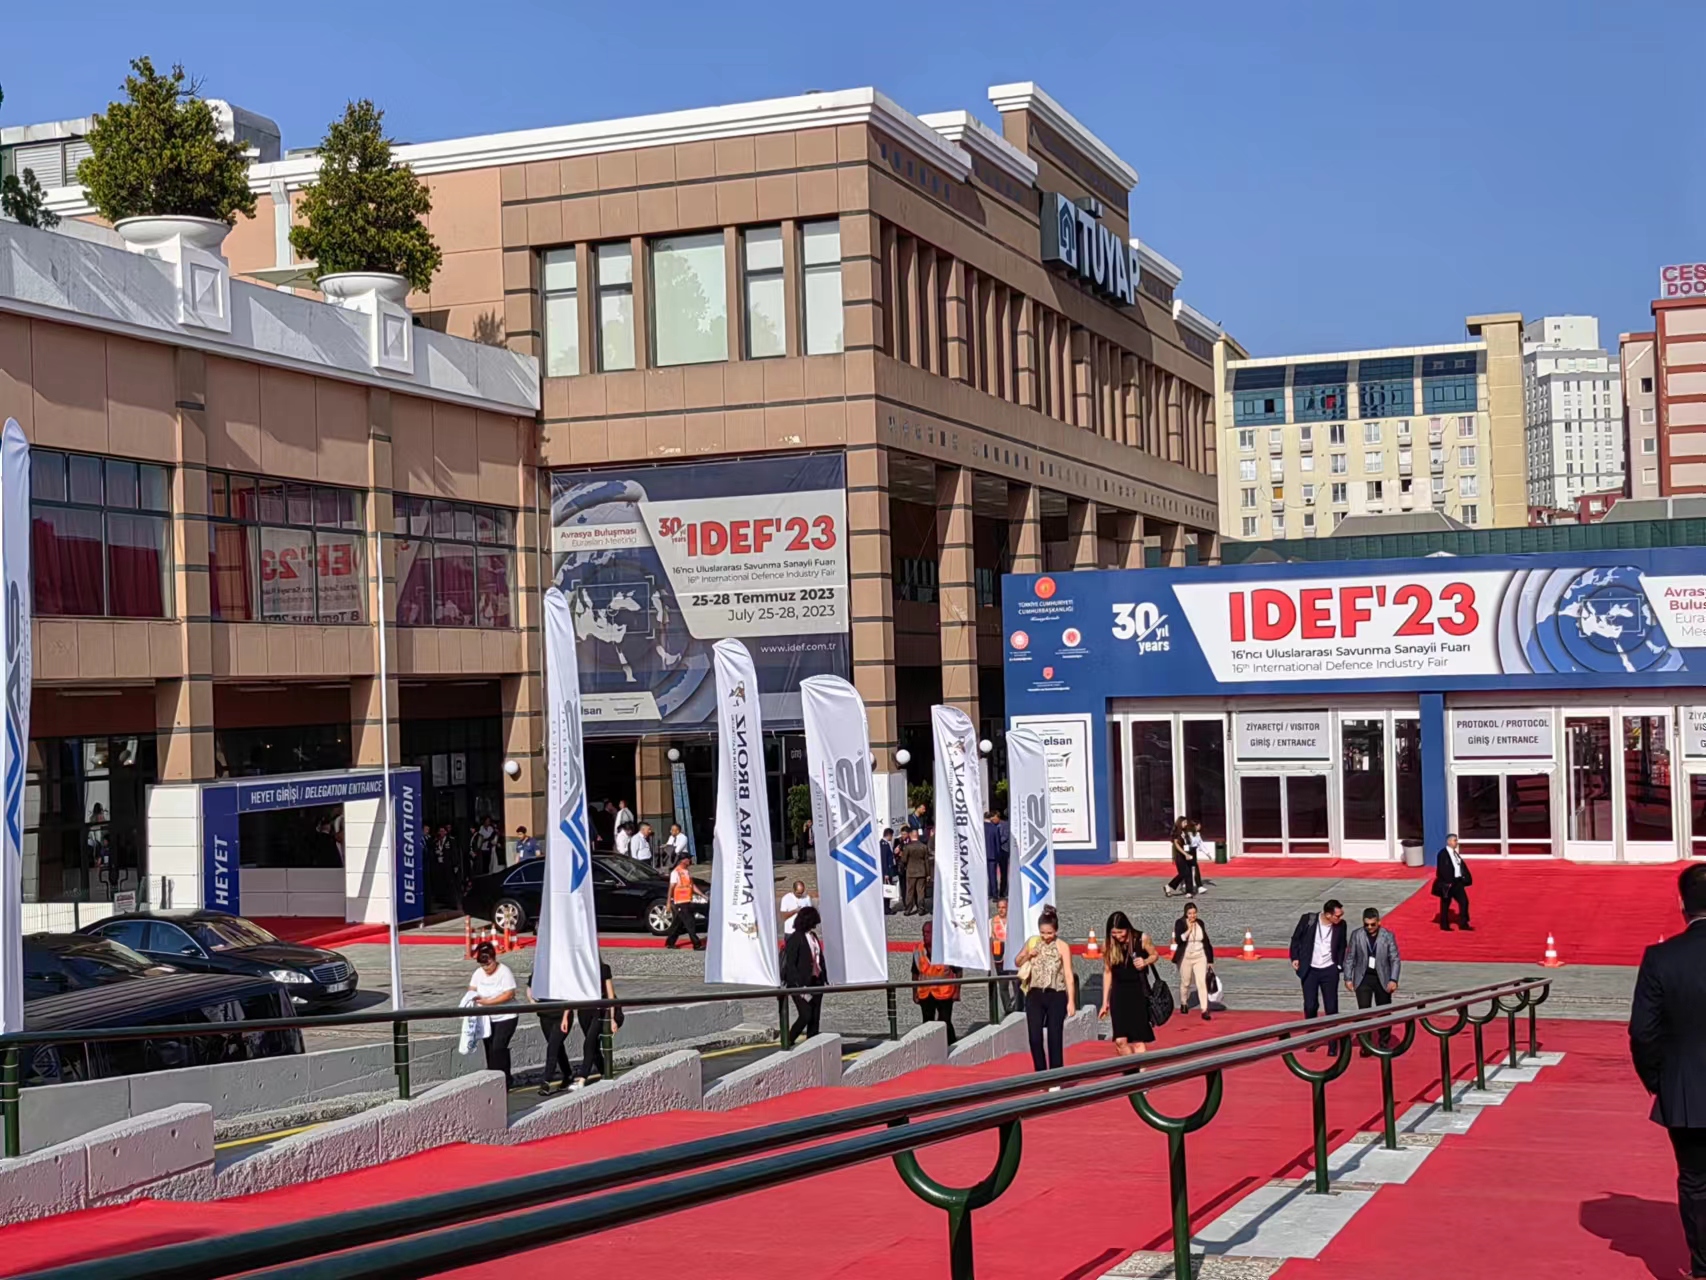 Zúčastněte se výstavy IDEF 2023 v Istanbulu v červenci 25-28